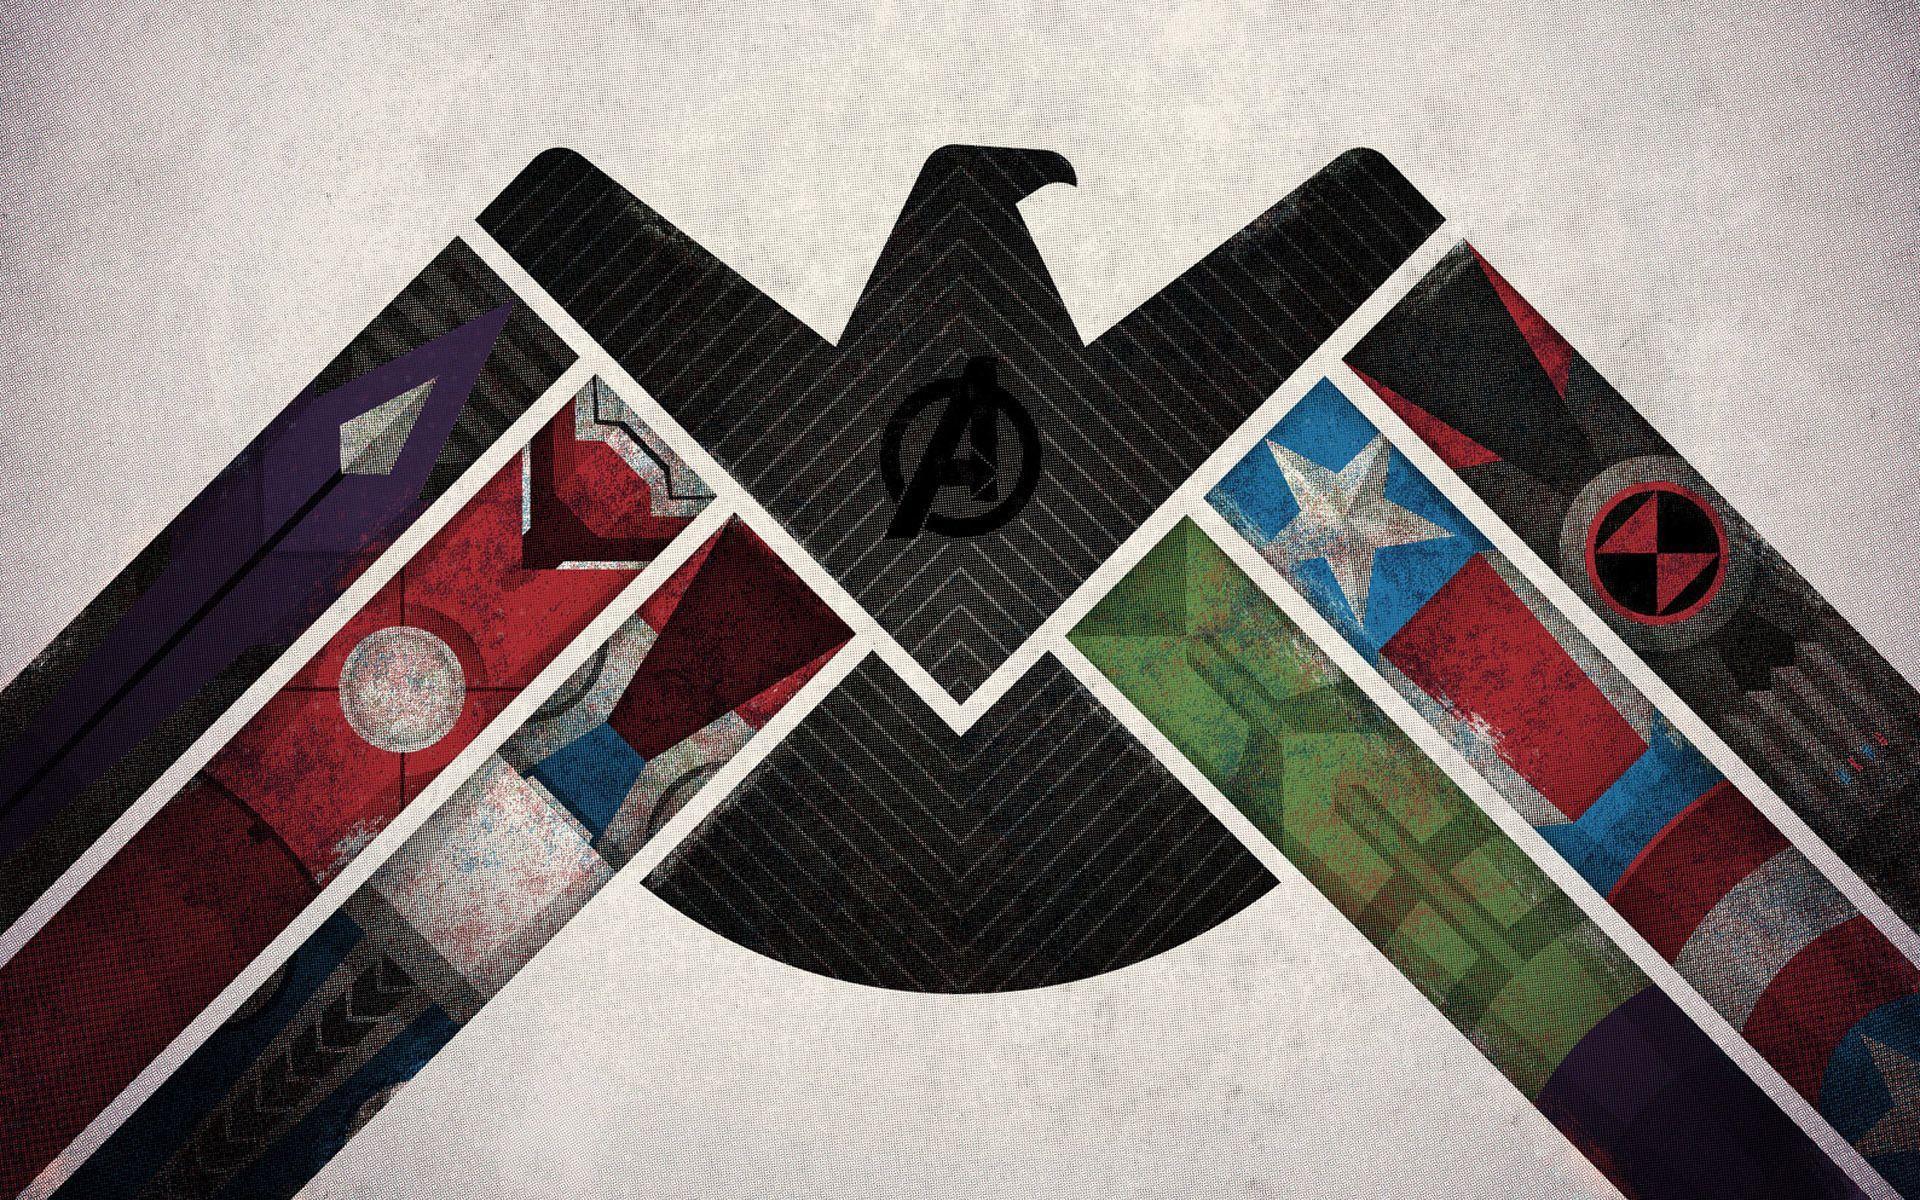 Shield Marvel Wallpaper